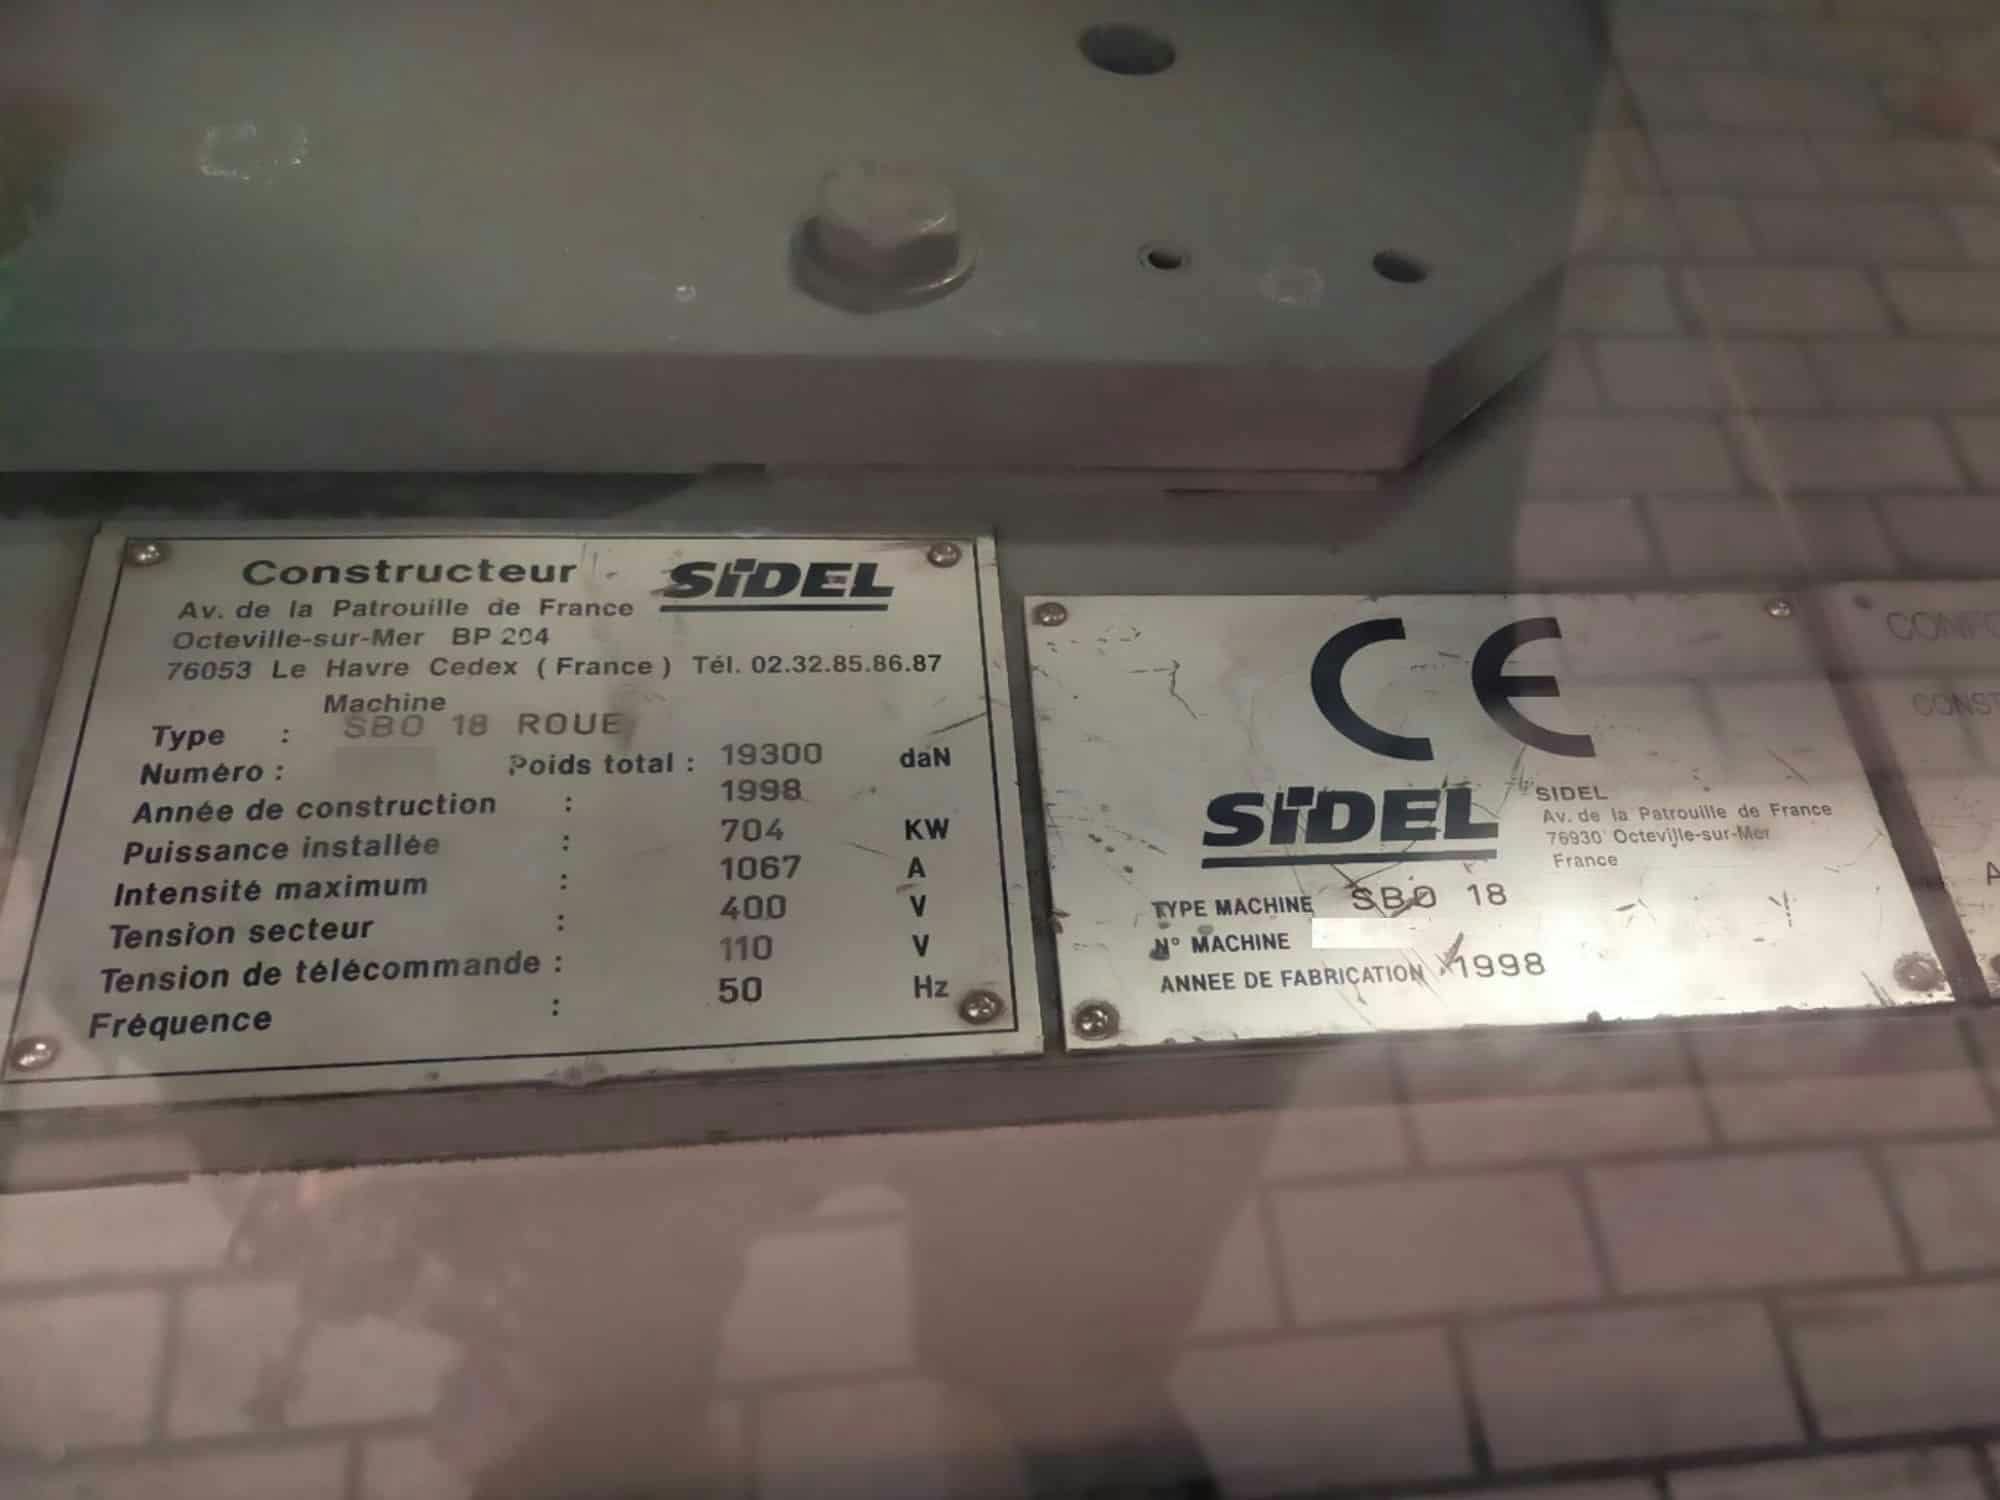 Placa de identificación of Sidel SBO 18 Series 2